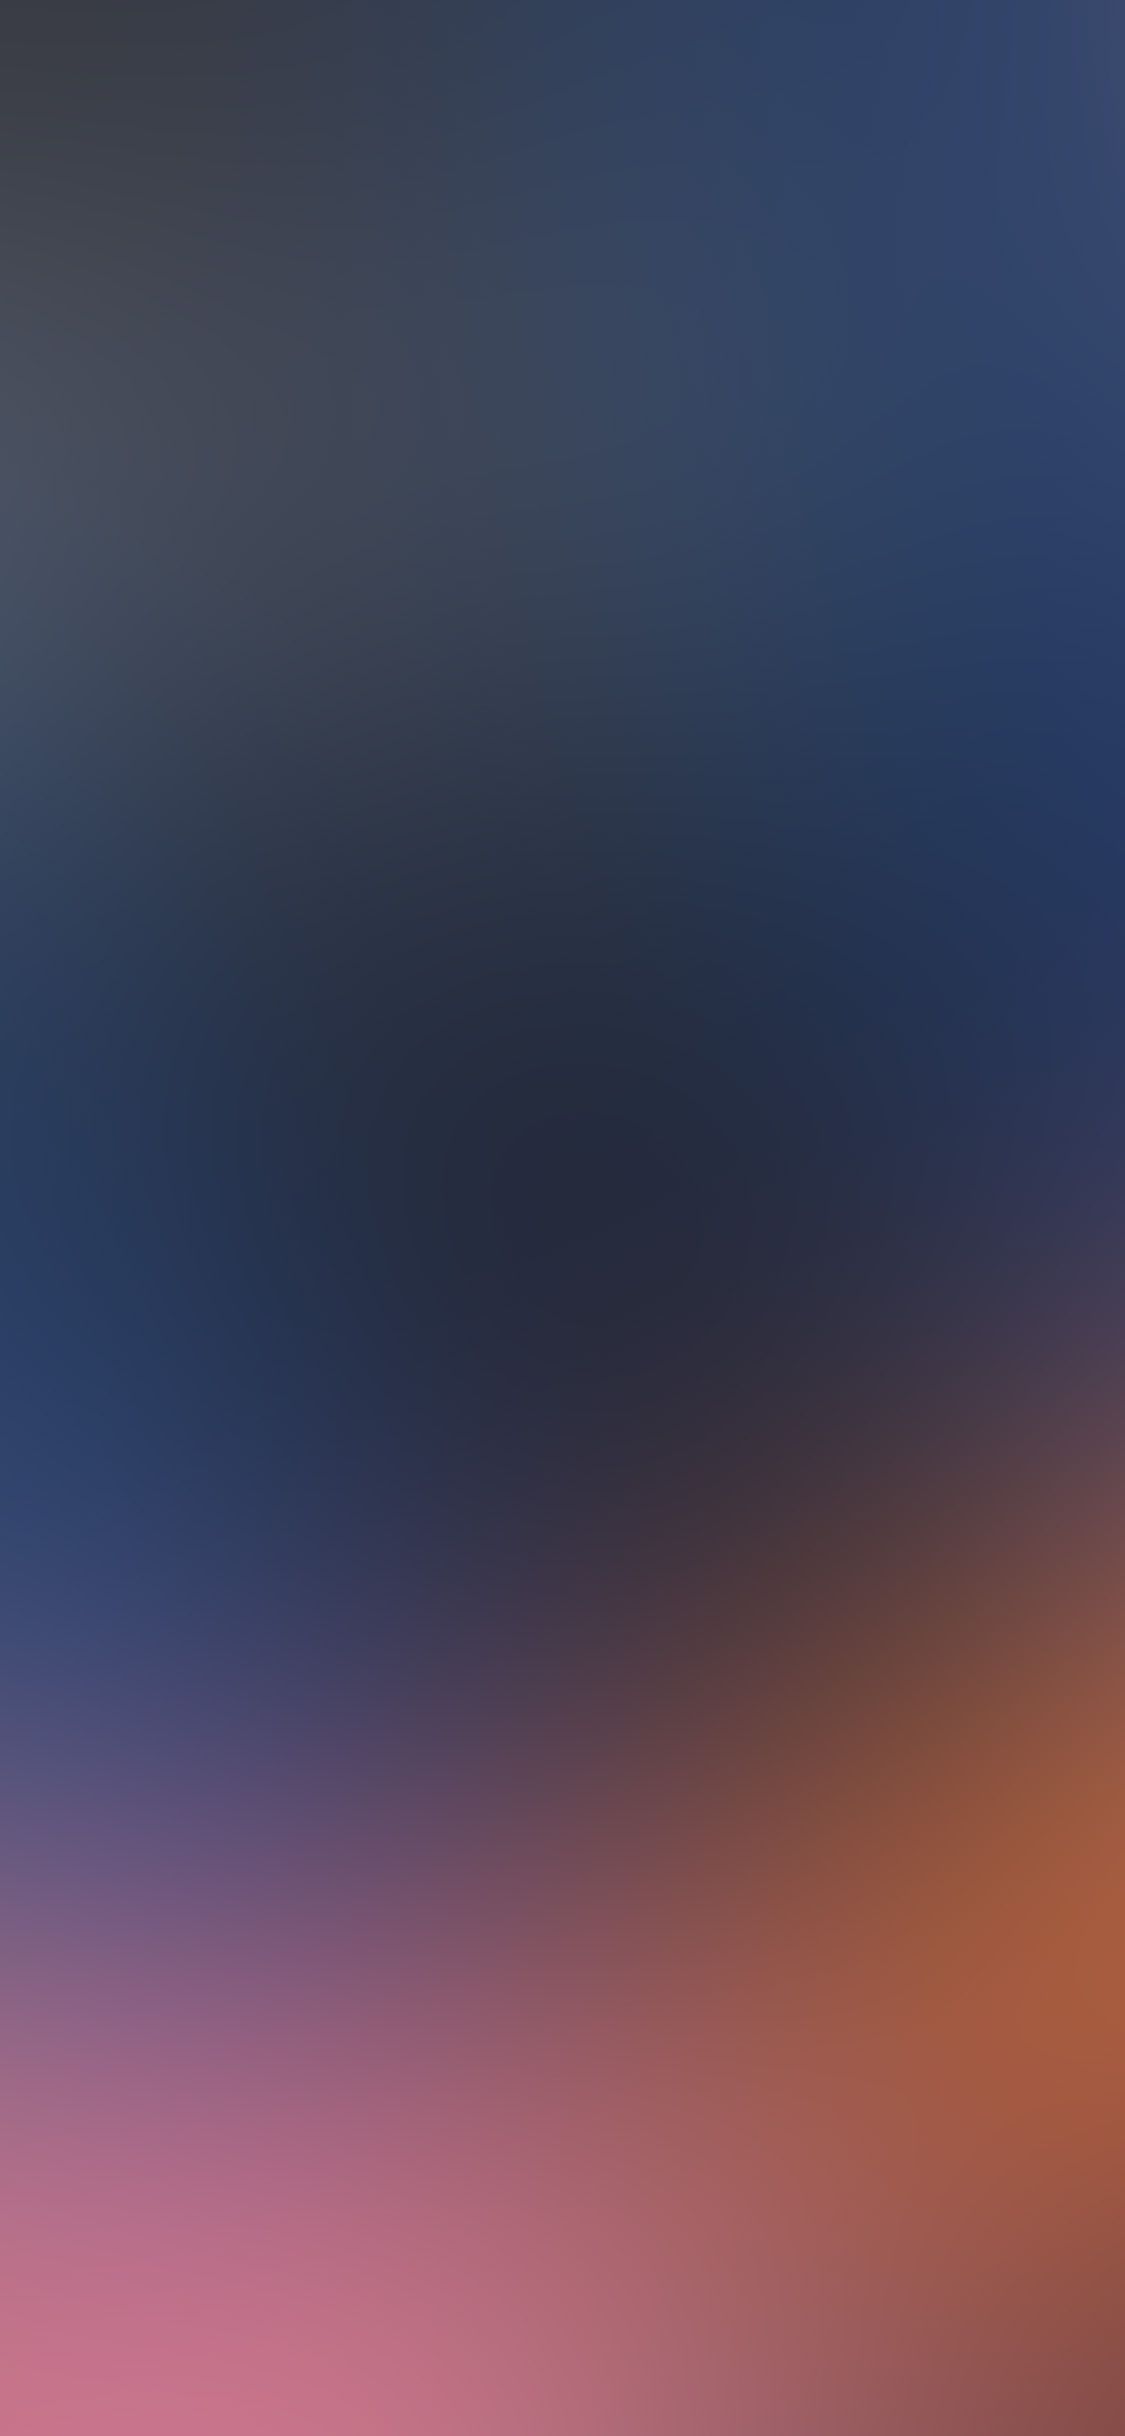 iPhone Blur Wallpaper